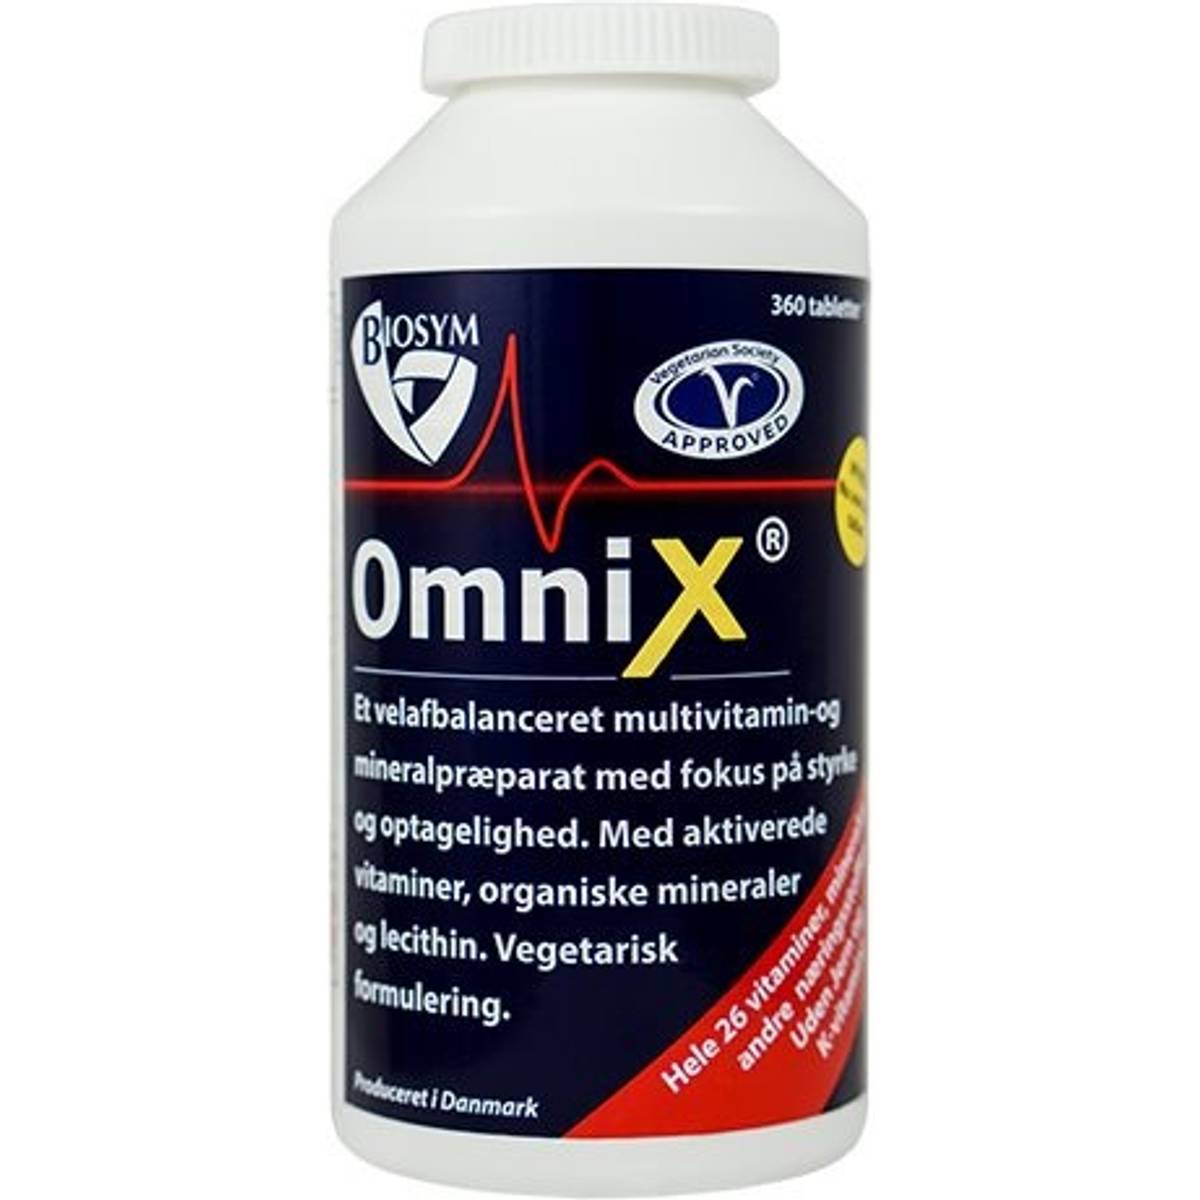 Omnix • Find den billigste pris hos PriceRunner og spar penge nu »